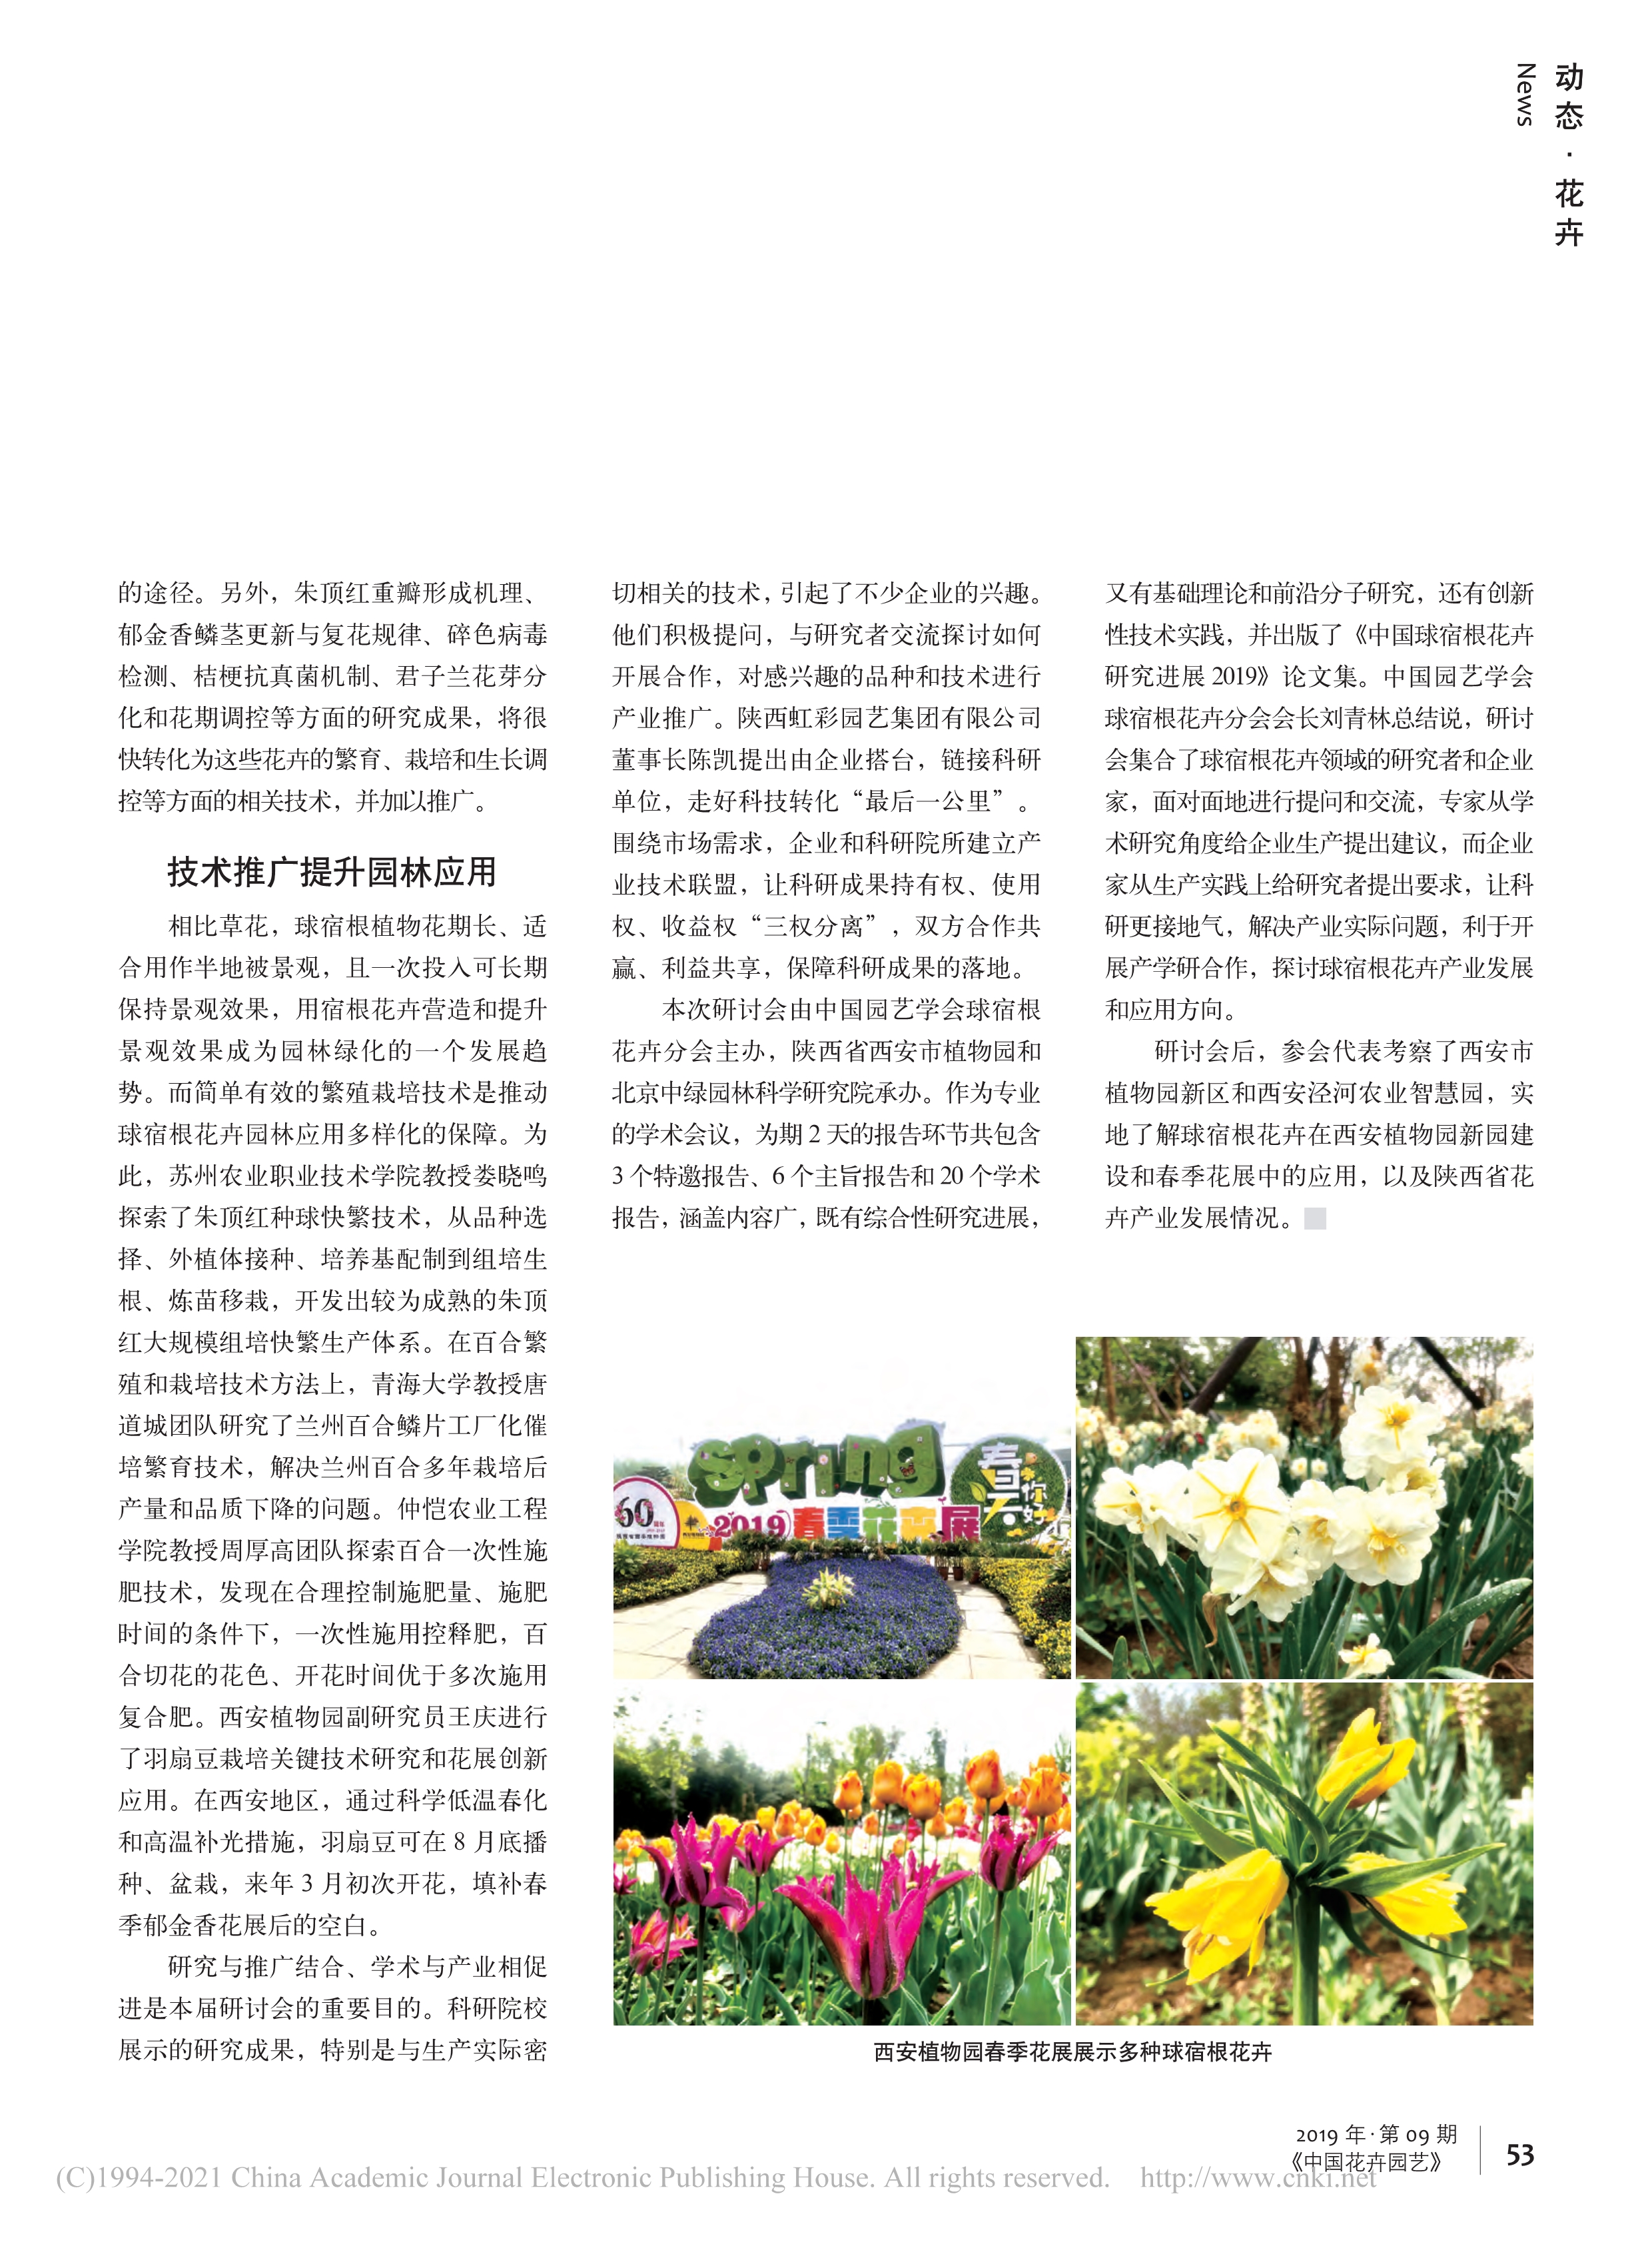 CSBP14 研究与推广结合__学术与产业互促——第十四届中国球宿根花卉研讨会在西安举办_李艳梅_2